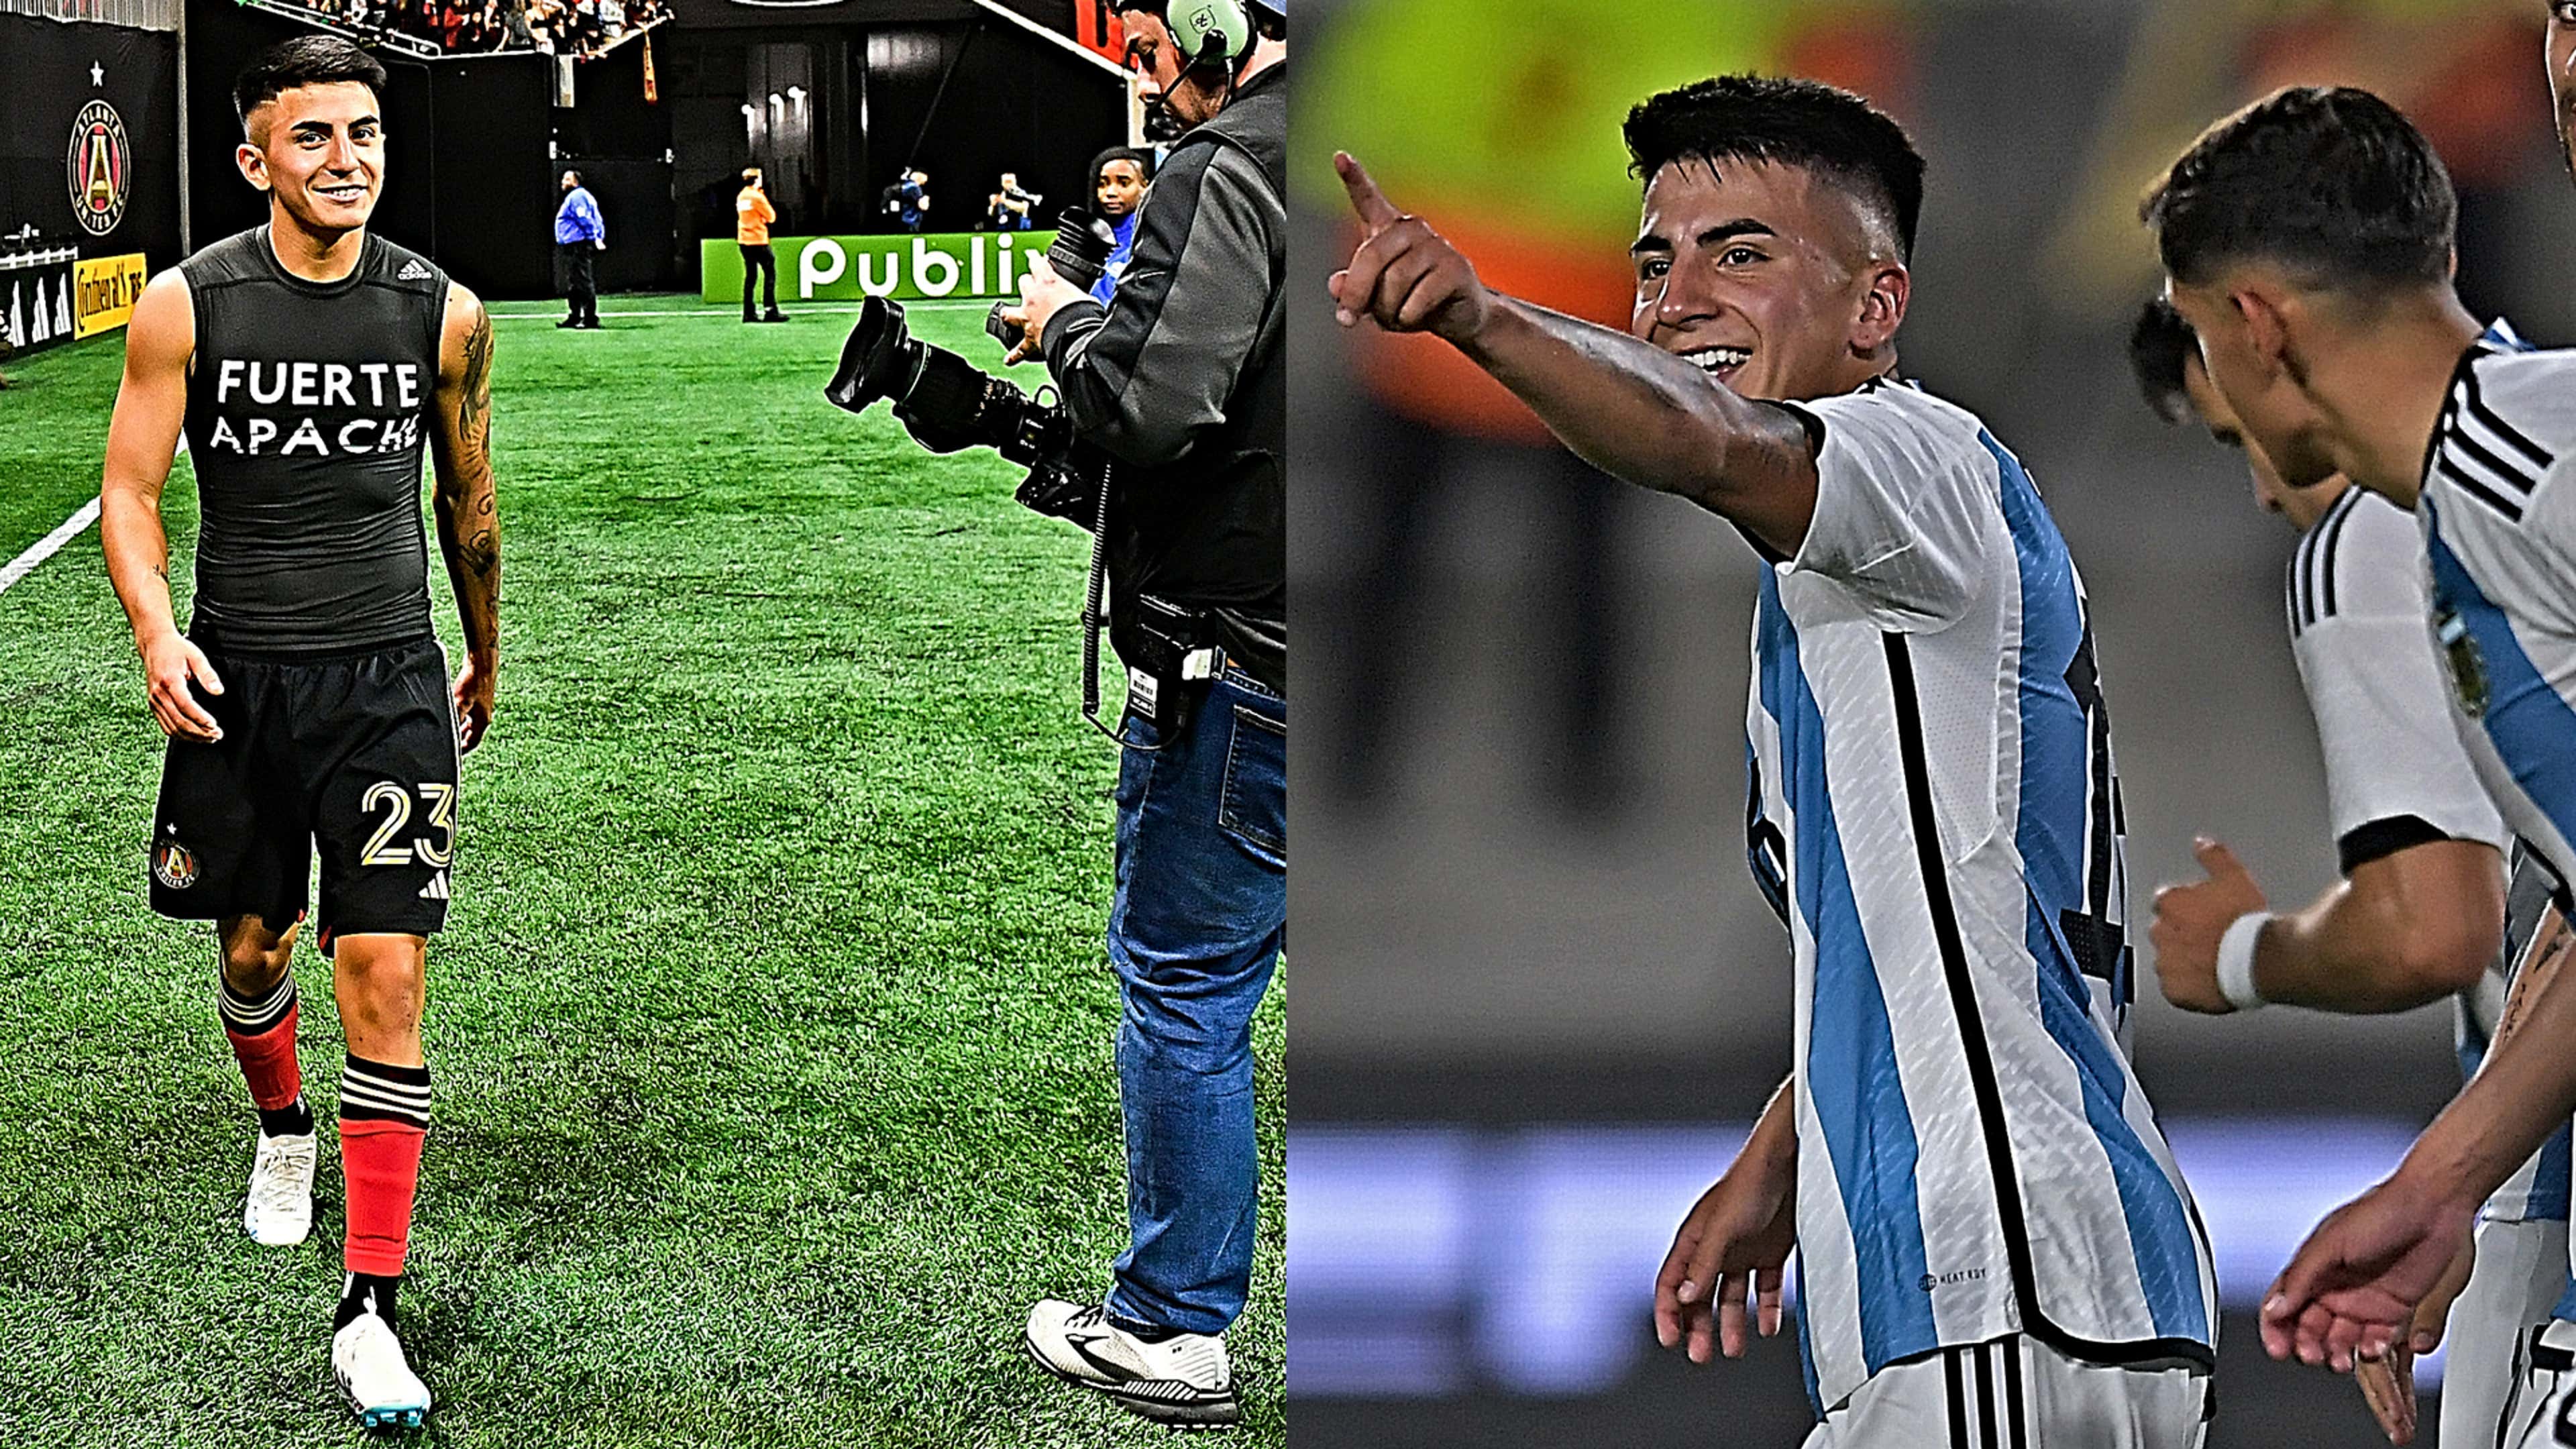 Valentin Carboni, il futuro di Inter e Argentina: dall'idolo Messi